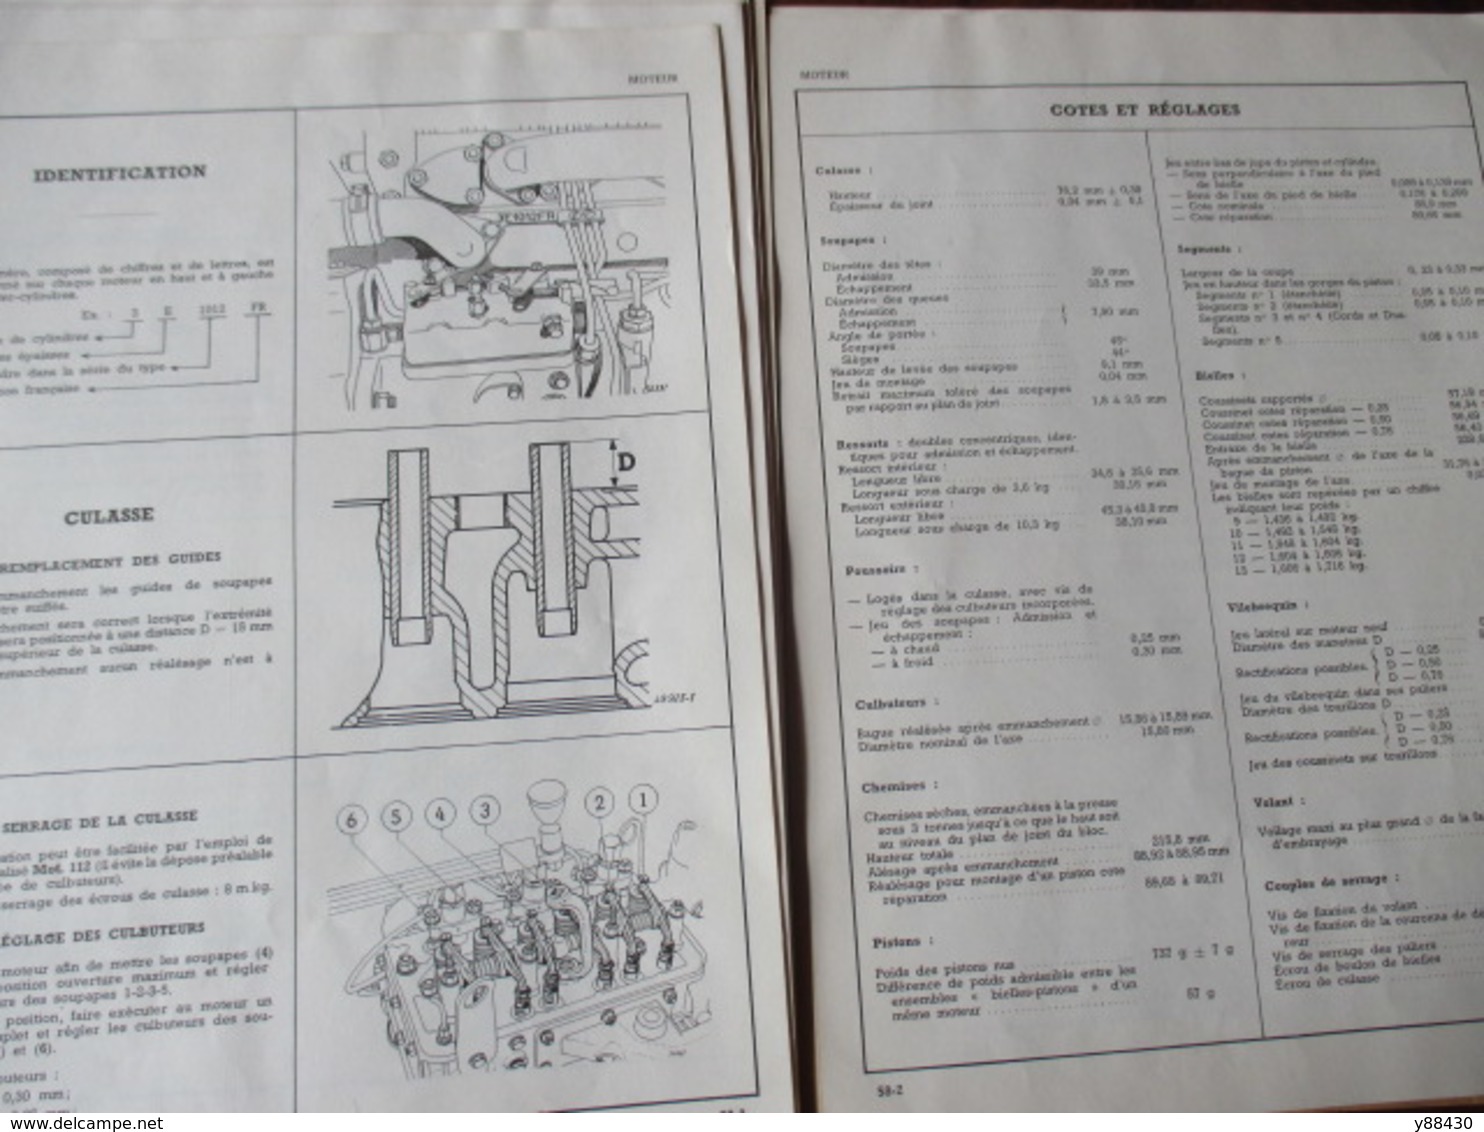 RENAULT - TRACTEUR AGRICOLE manuel de réparation  type R.7051 - M.R.39  - Mise à jour de juin 1961 -36 pages -20 photos